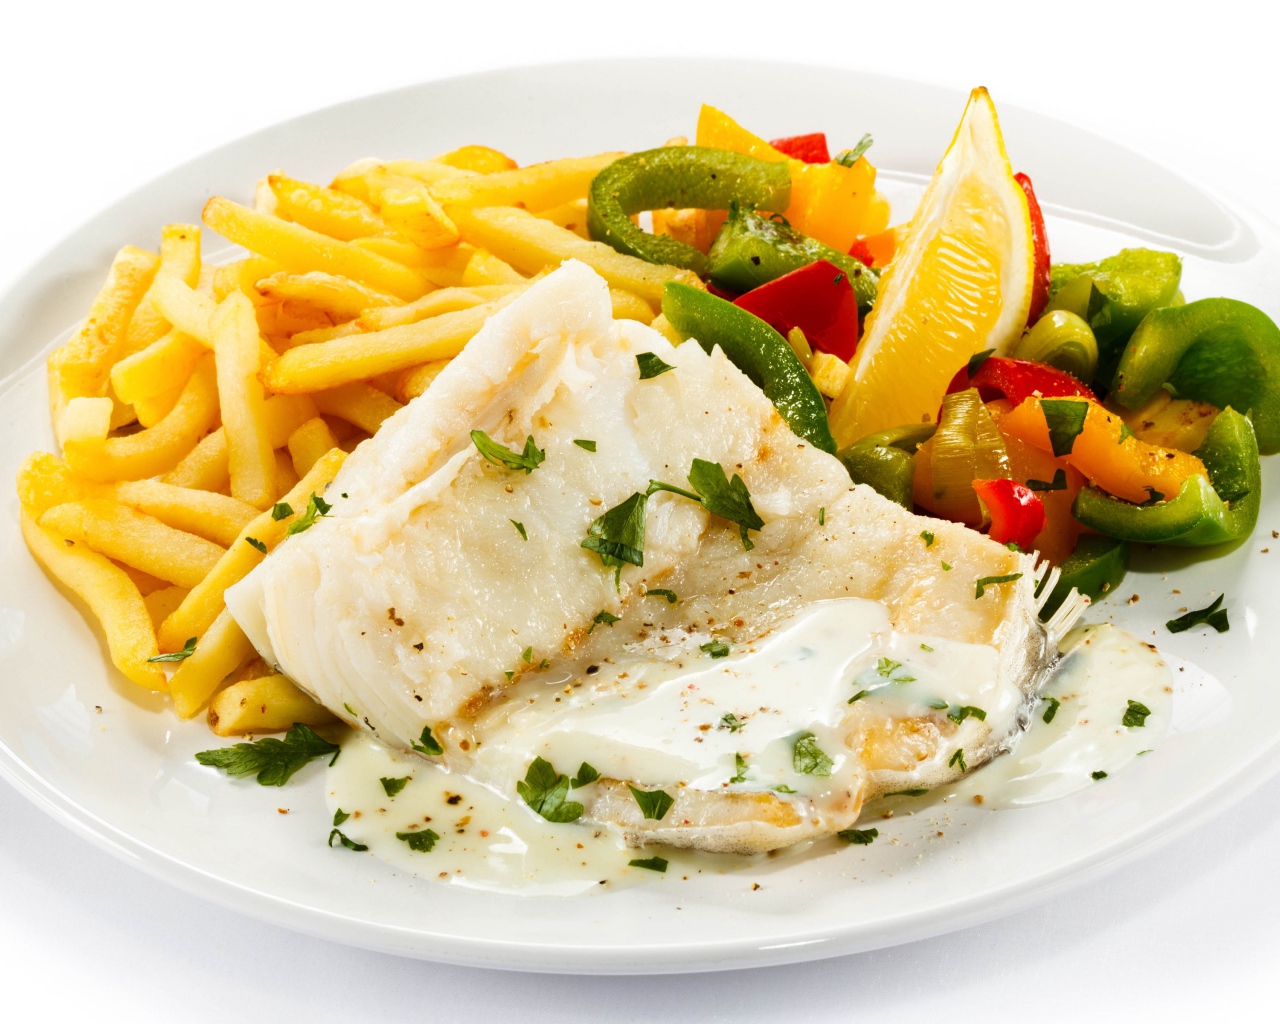 Филе рыбы на тарелке с картофелем и салатом на белом фоне